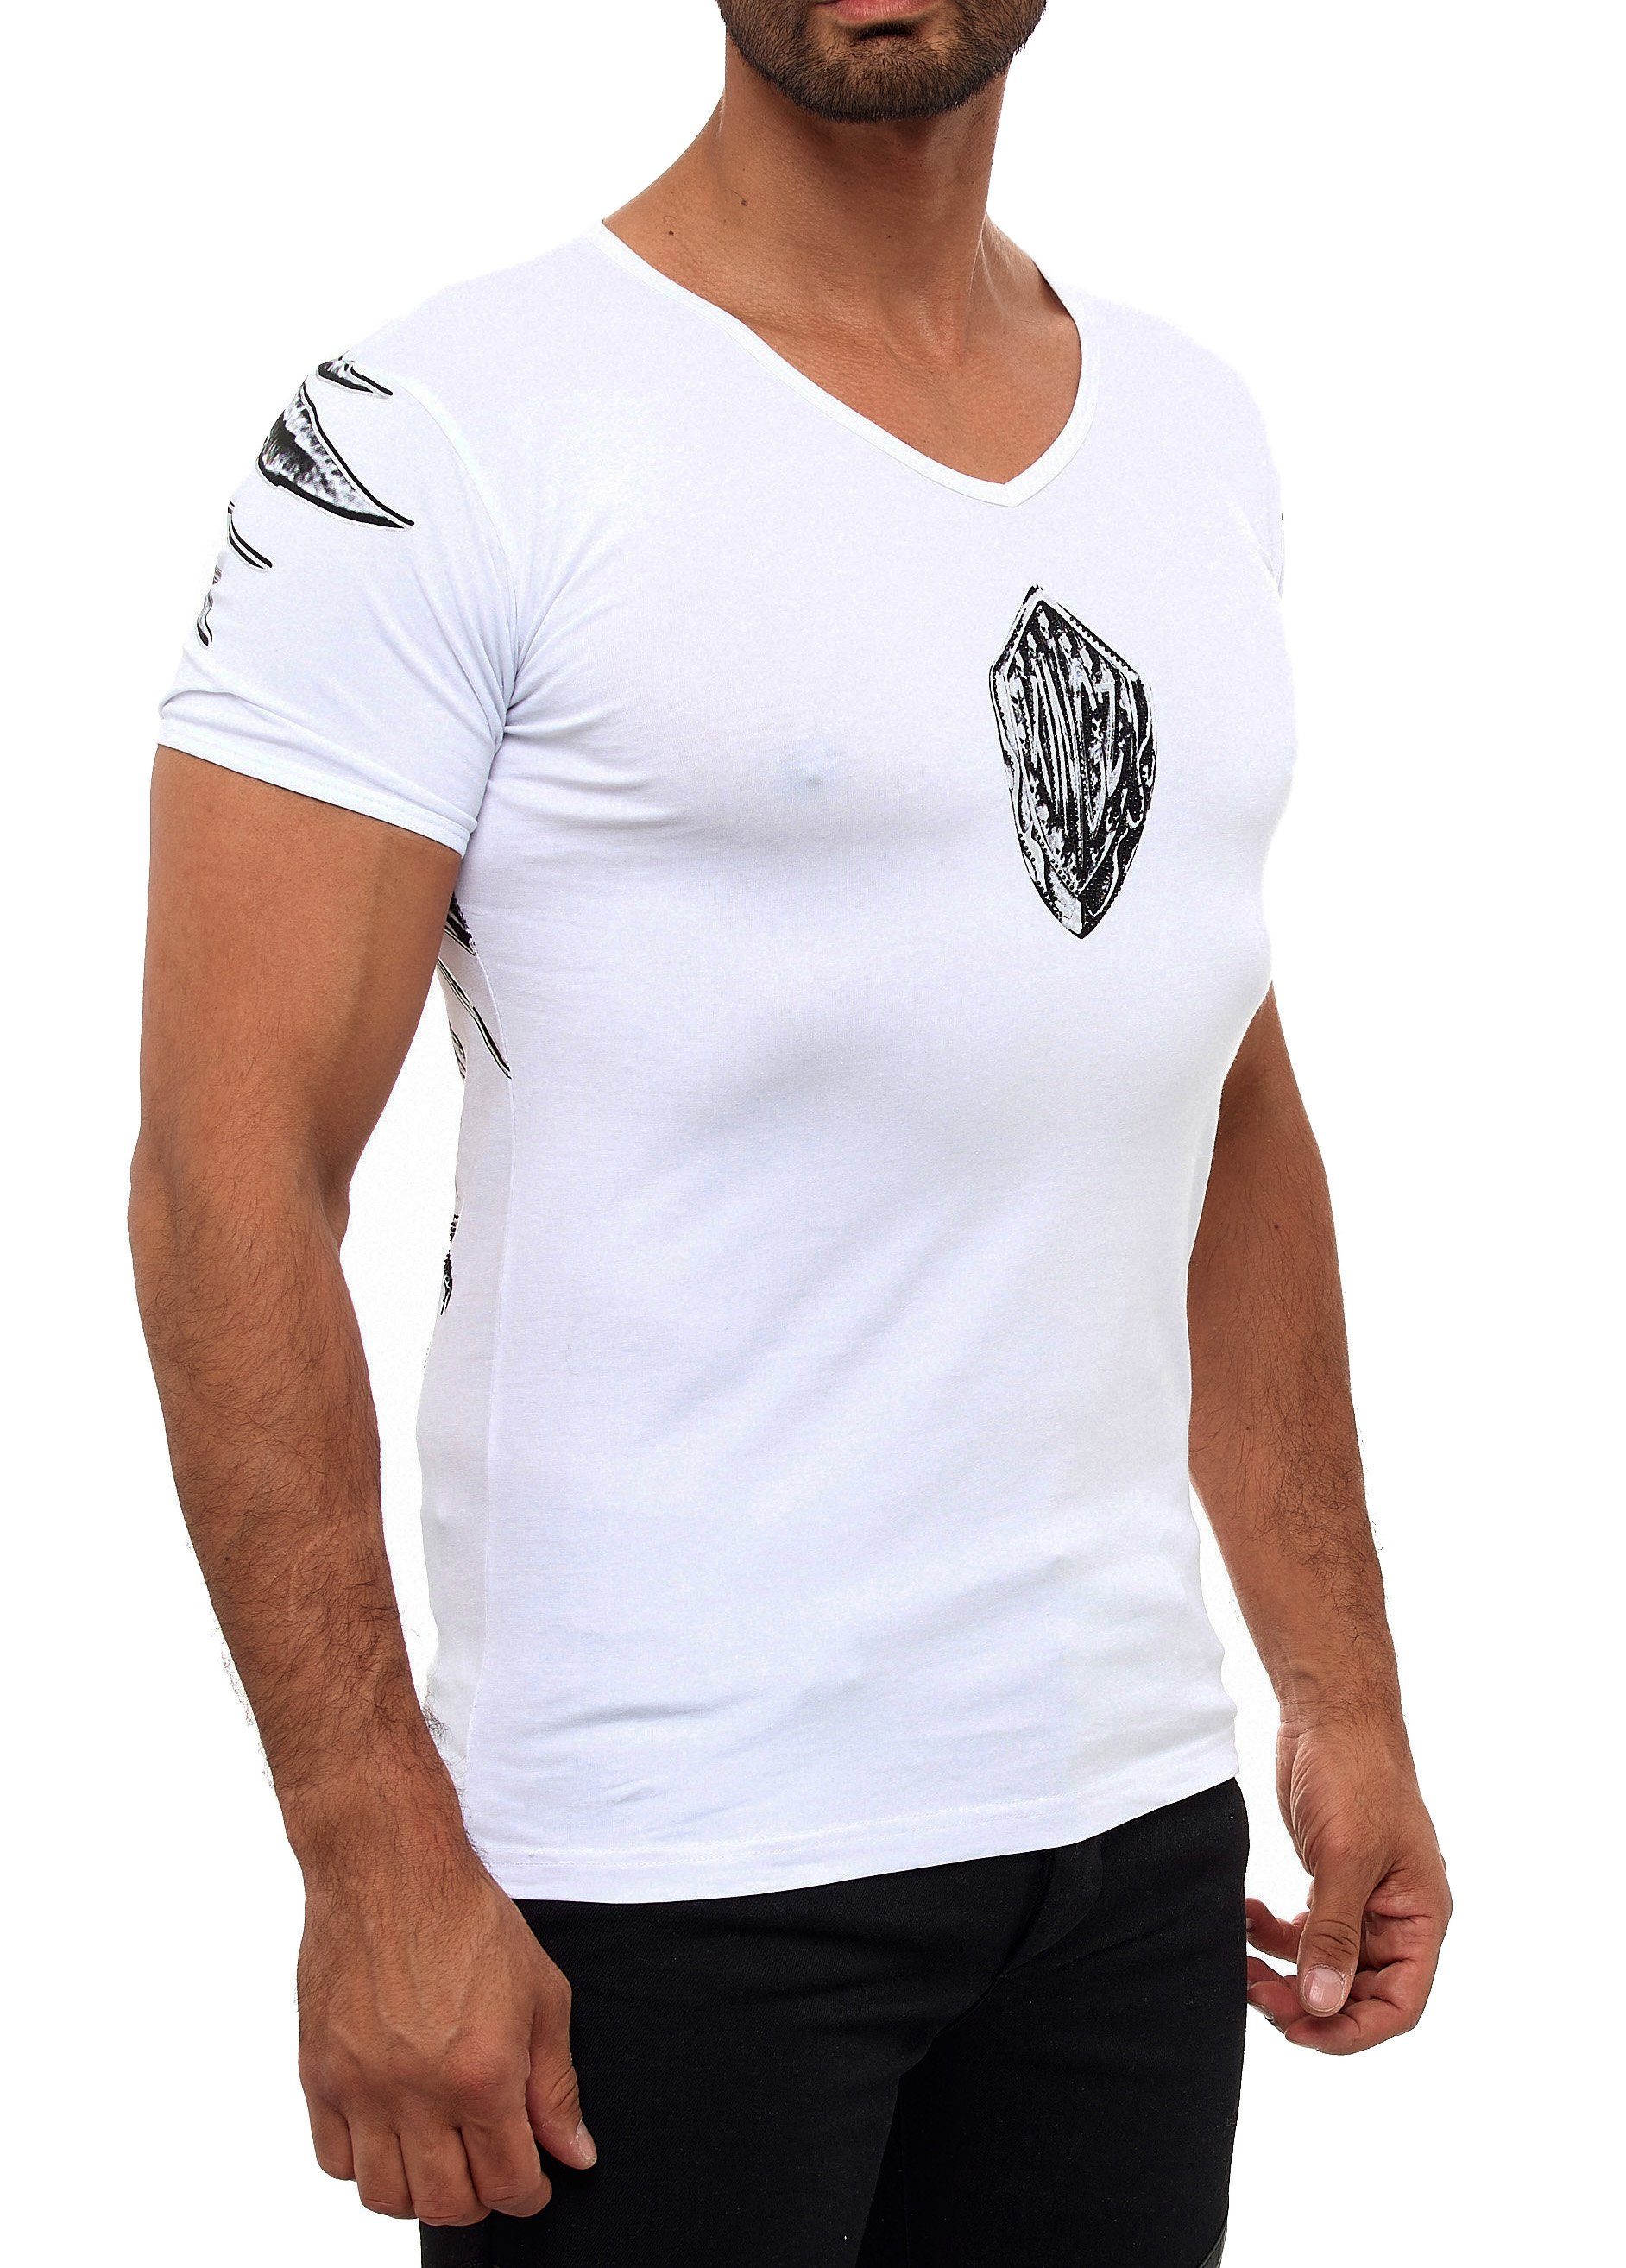 mit ausgefallenem weiß-silberfarben T-Shirt KINGZ Adler-Print